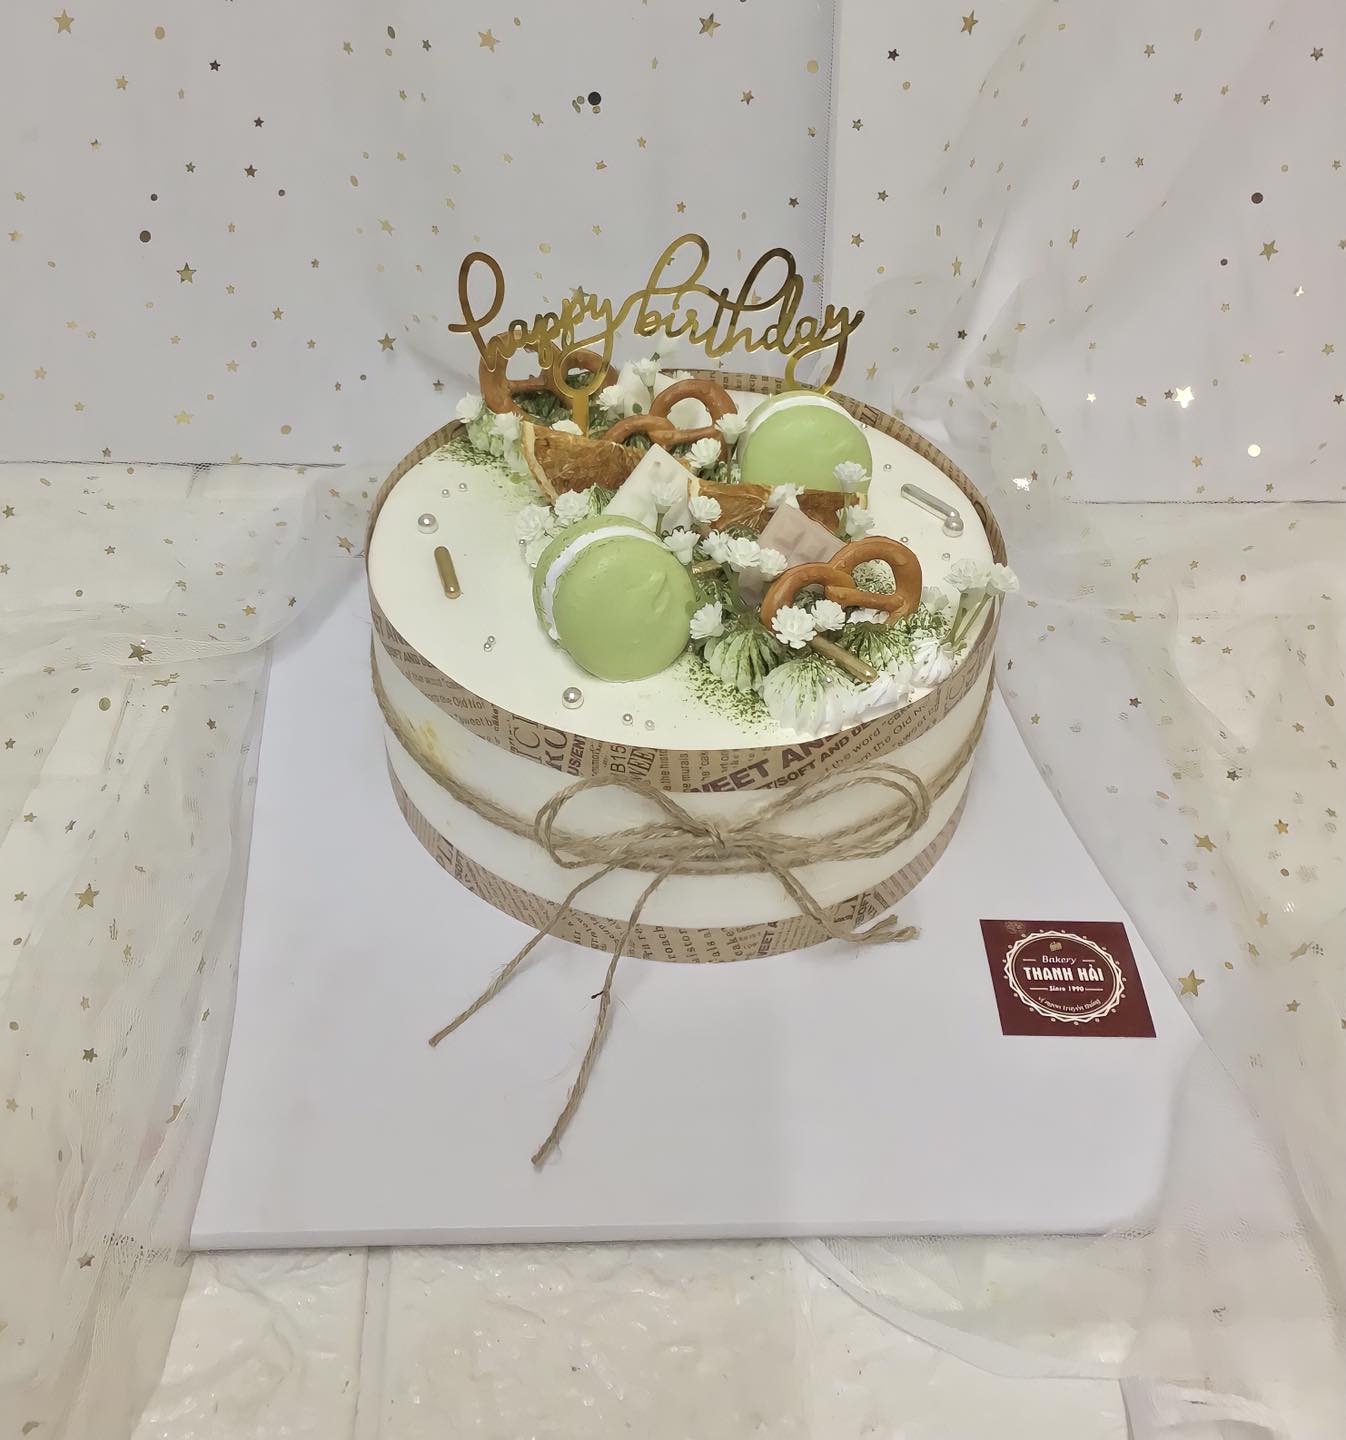 Bài viết quảng cáo bánh sinh nhật - Gato Thanh Hải